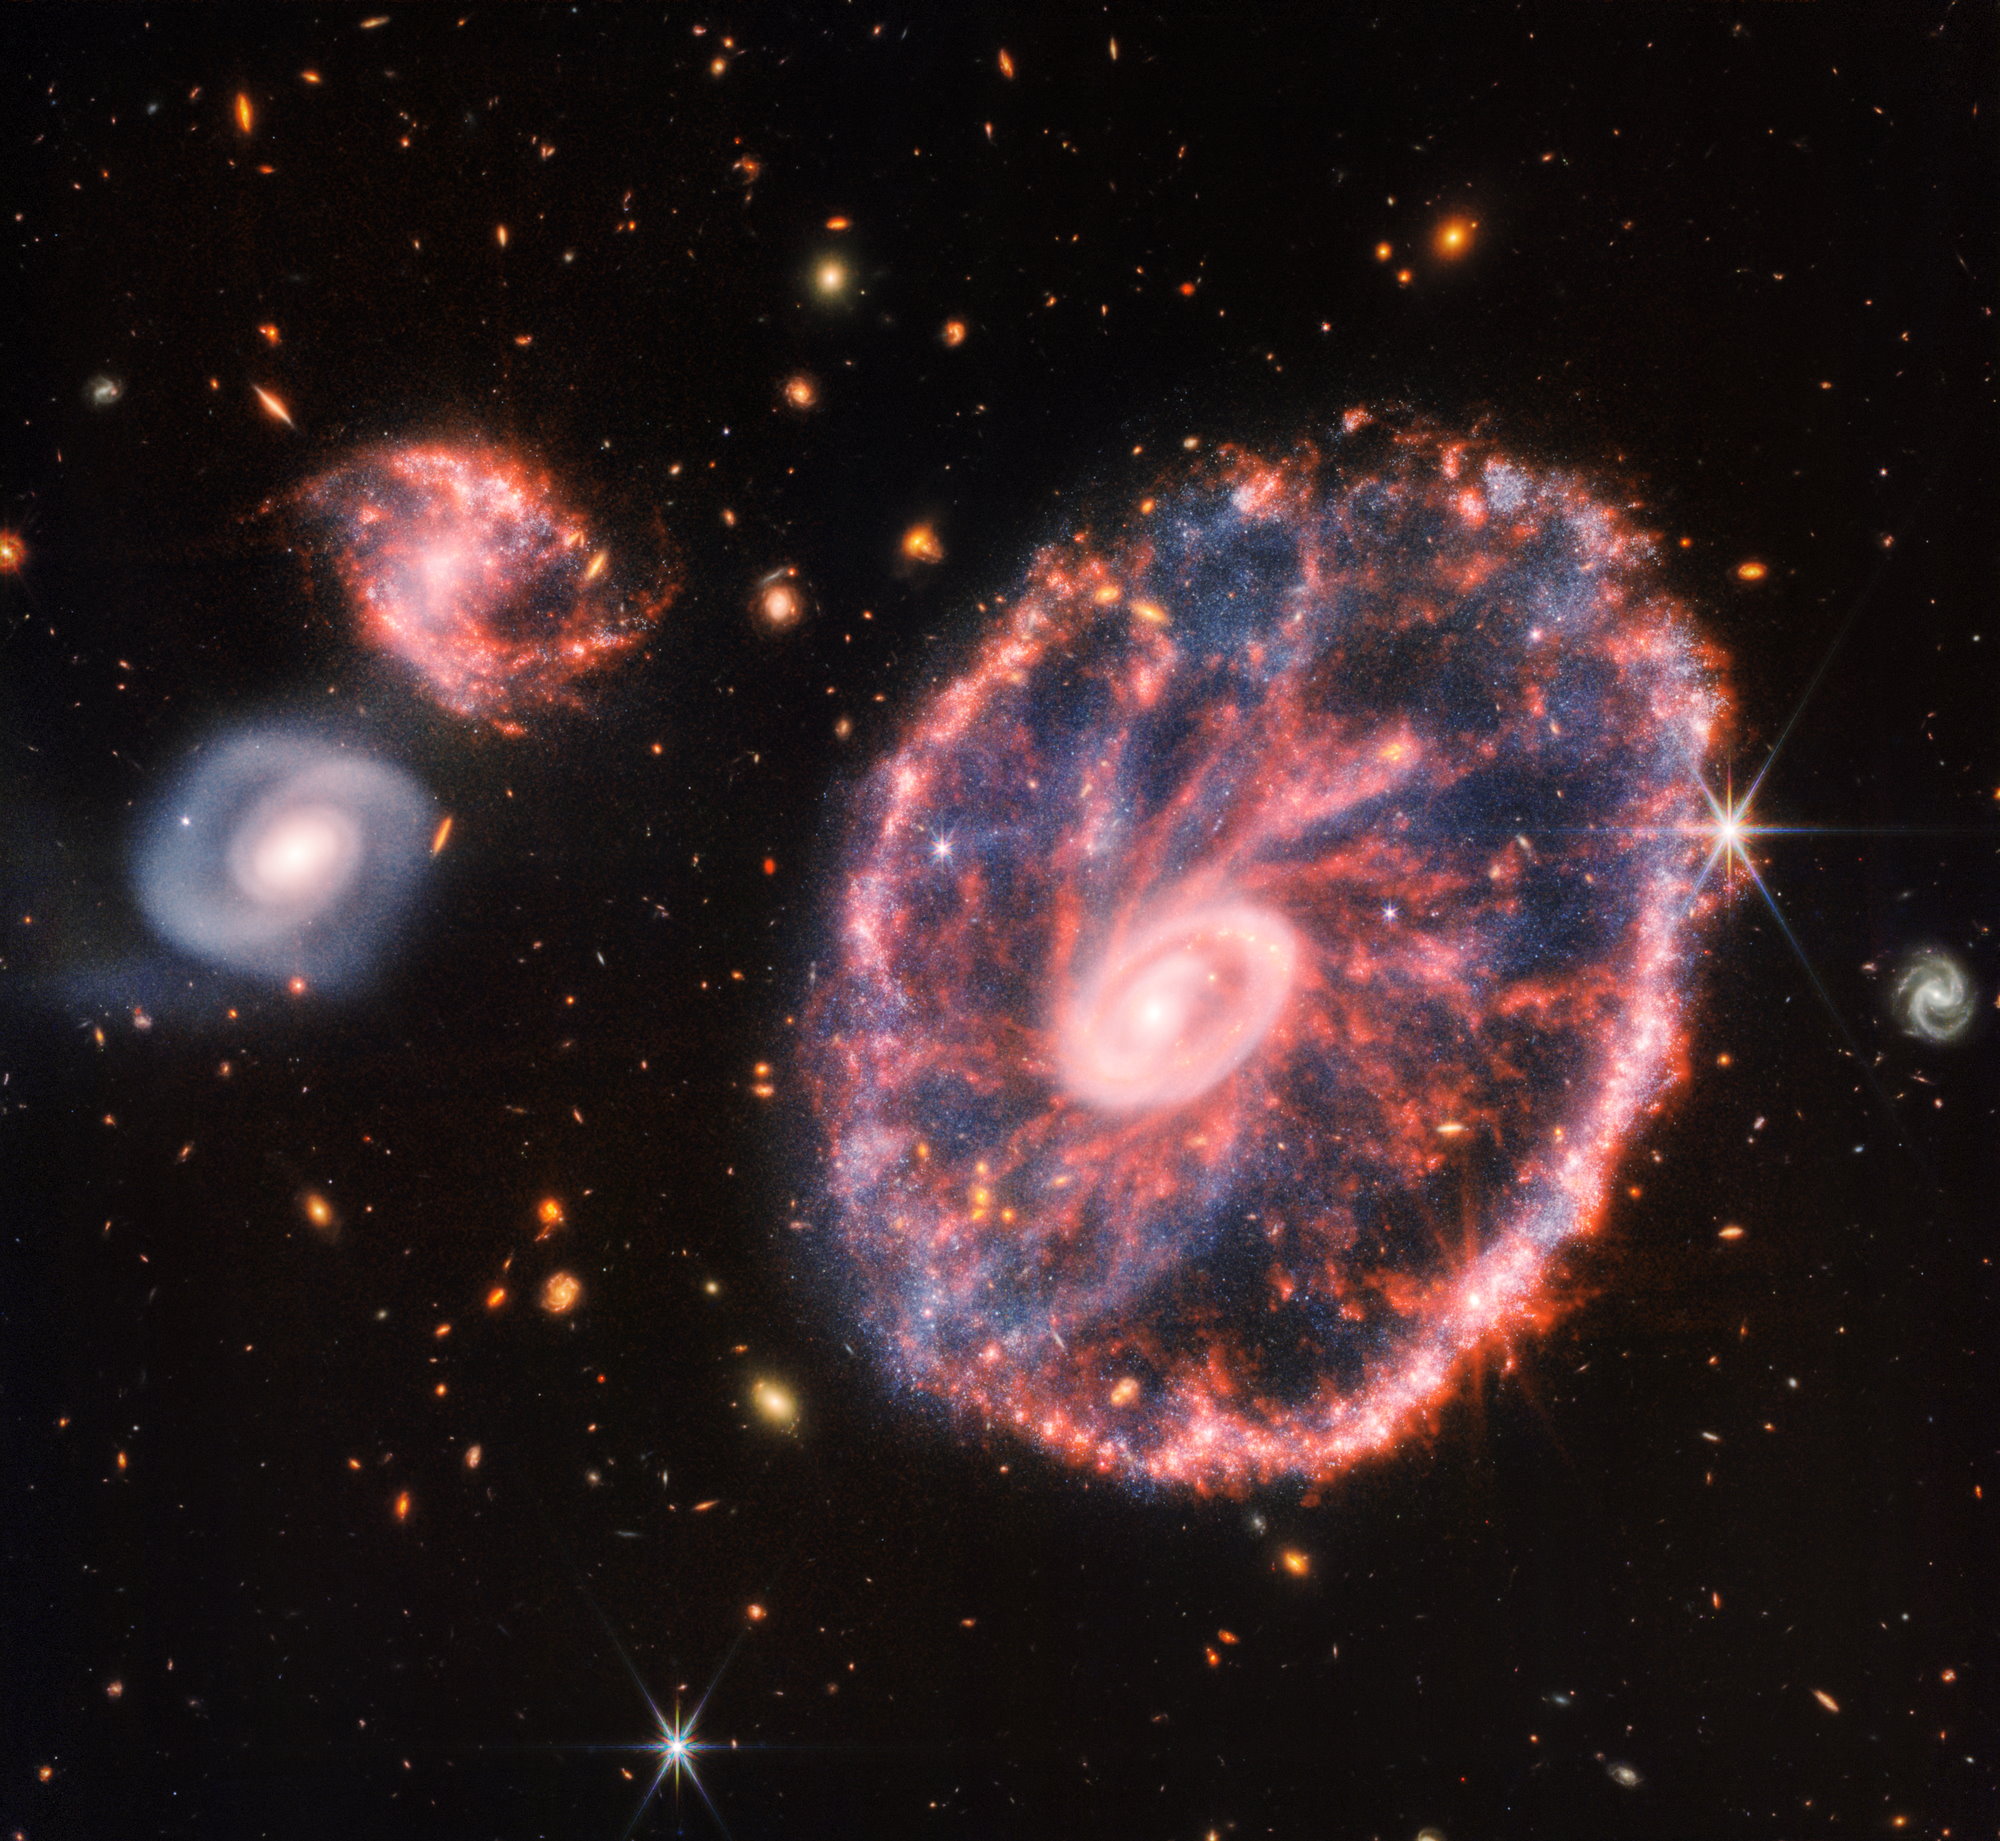 Cartwheel Galaxy is a new star formation